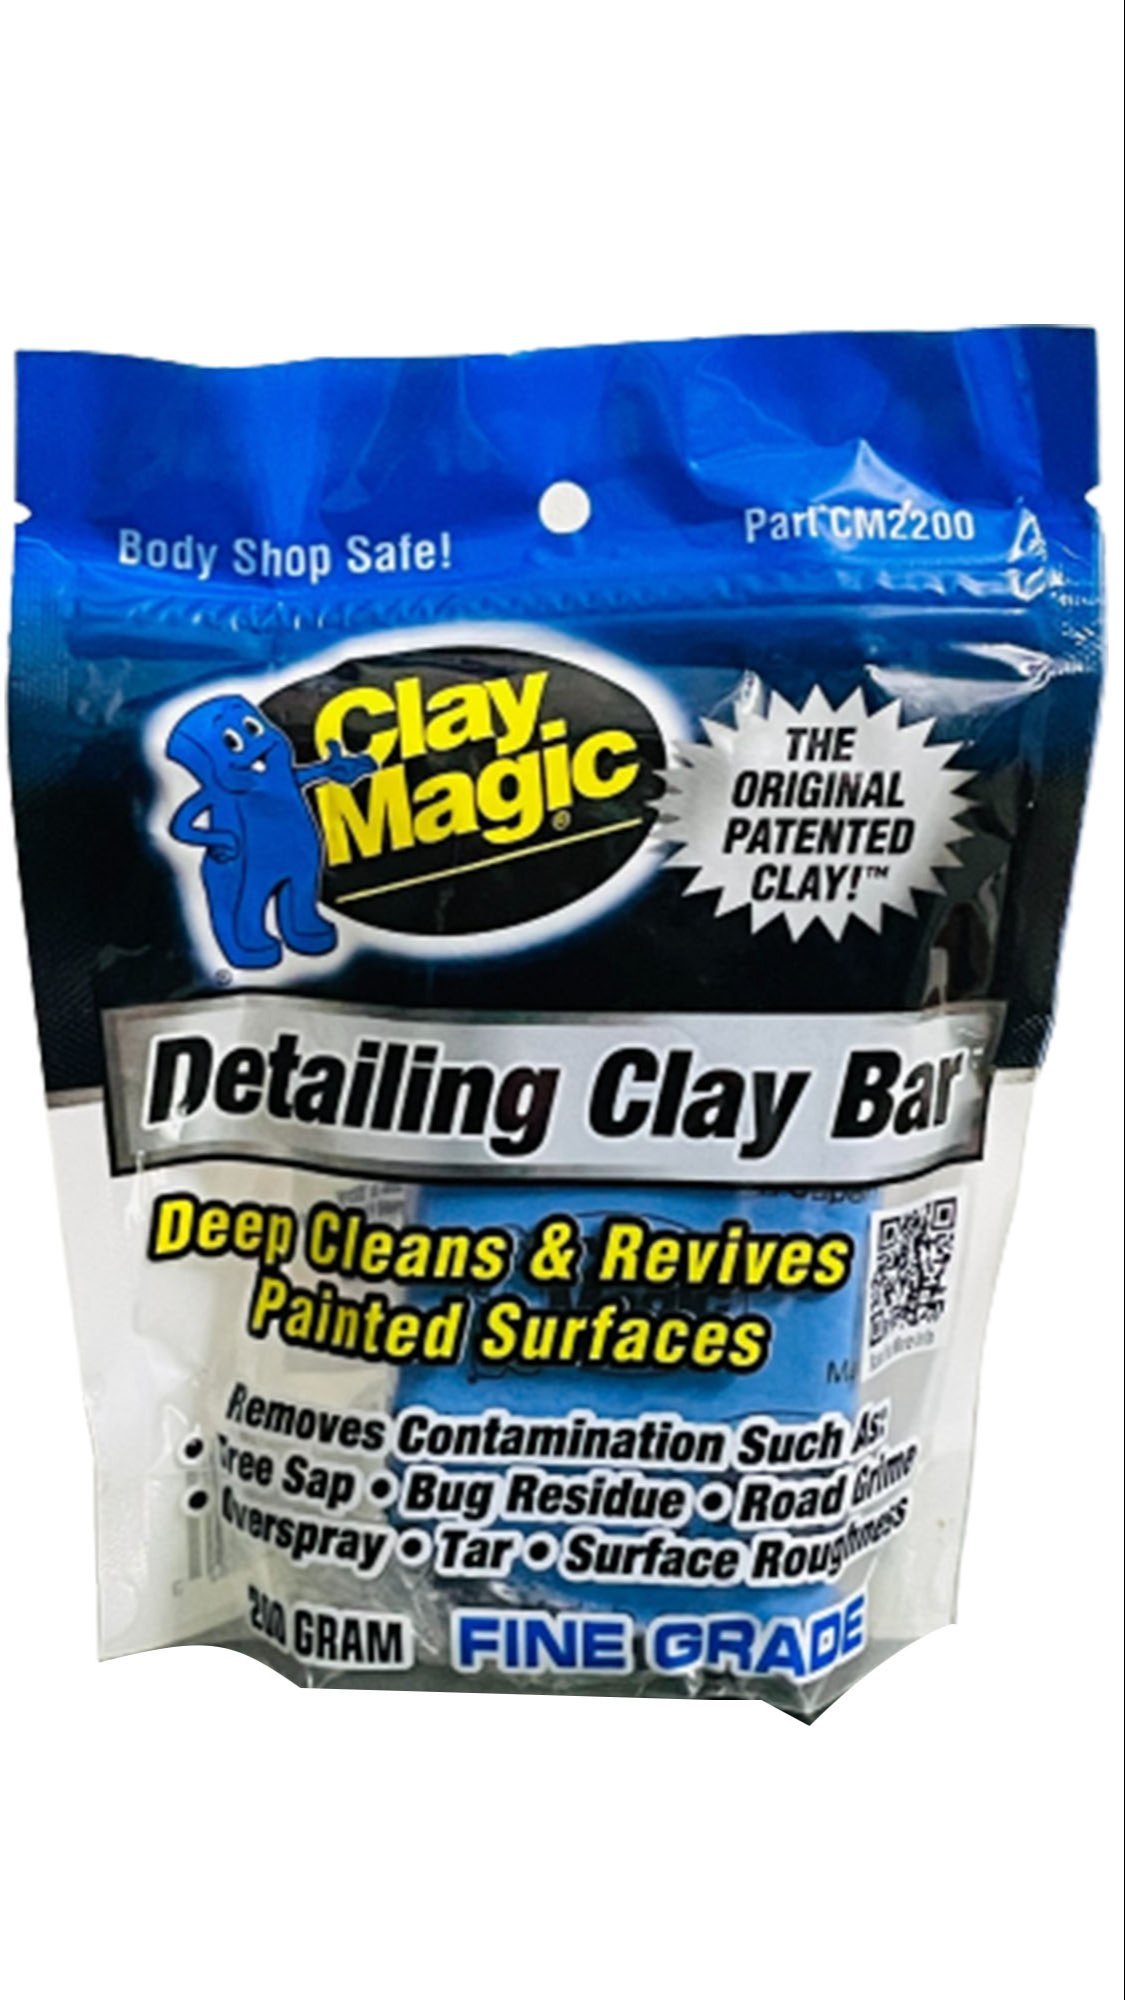 clay-magic-detailing-clay-bar.jpg